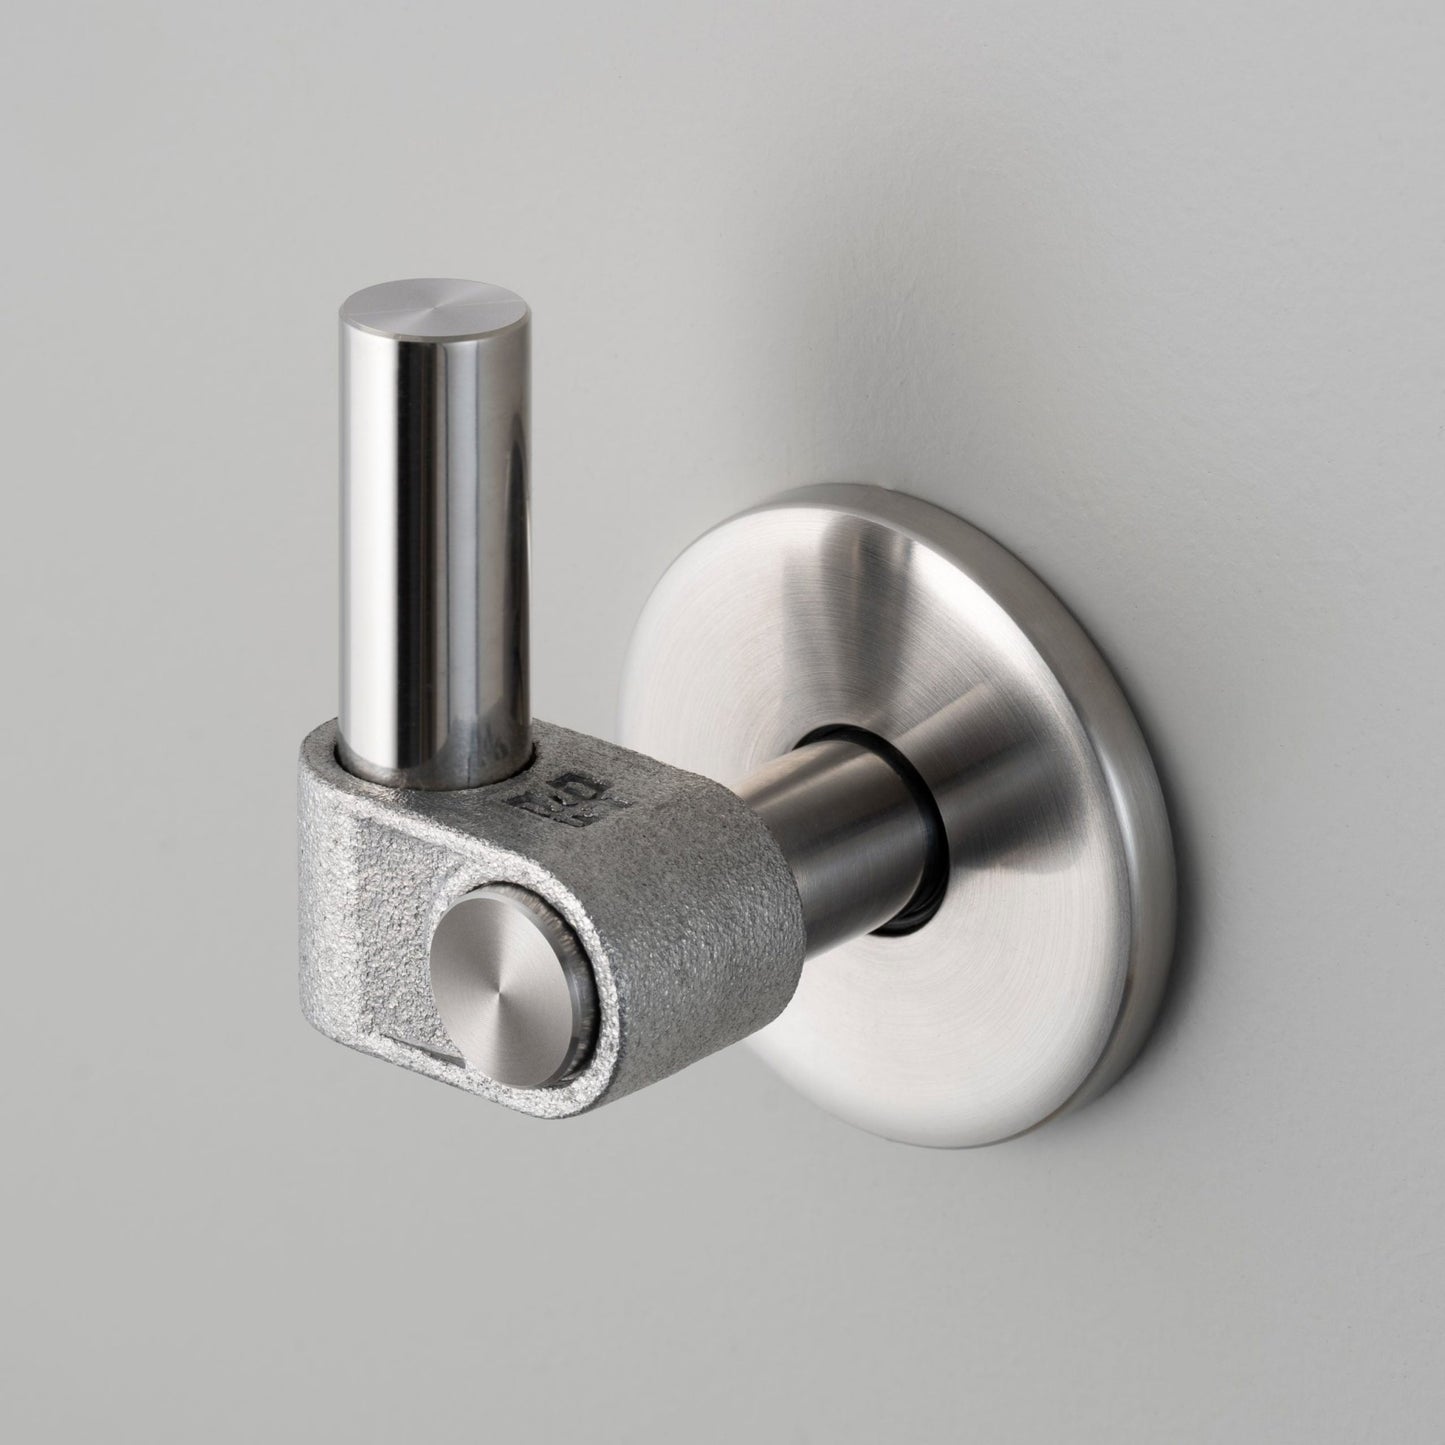 Industrial Towel Hook STEEL - |VESIMI Design| Luxury and Rustic bathrooms online